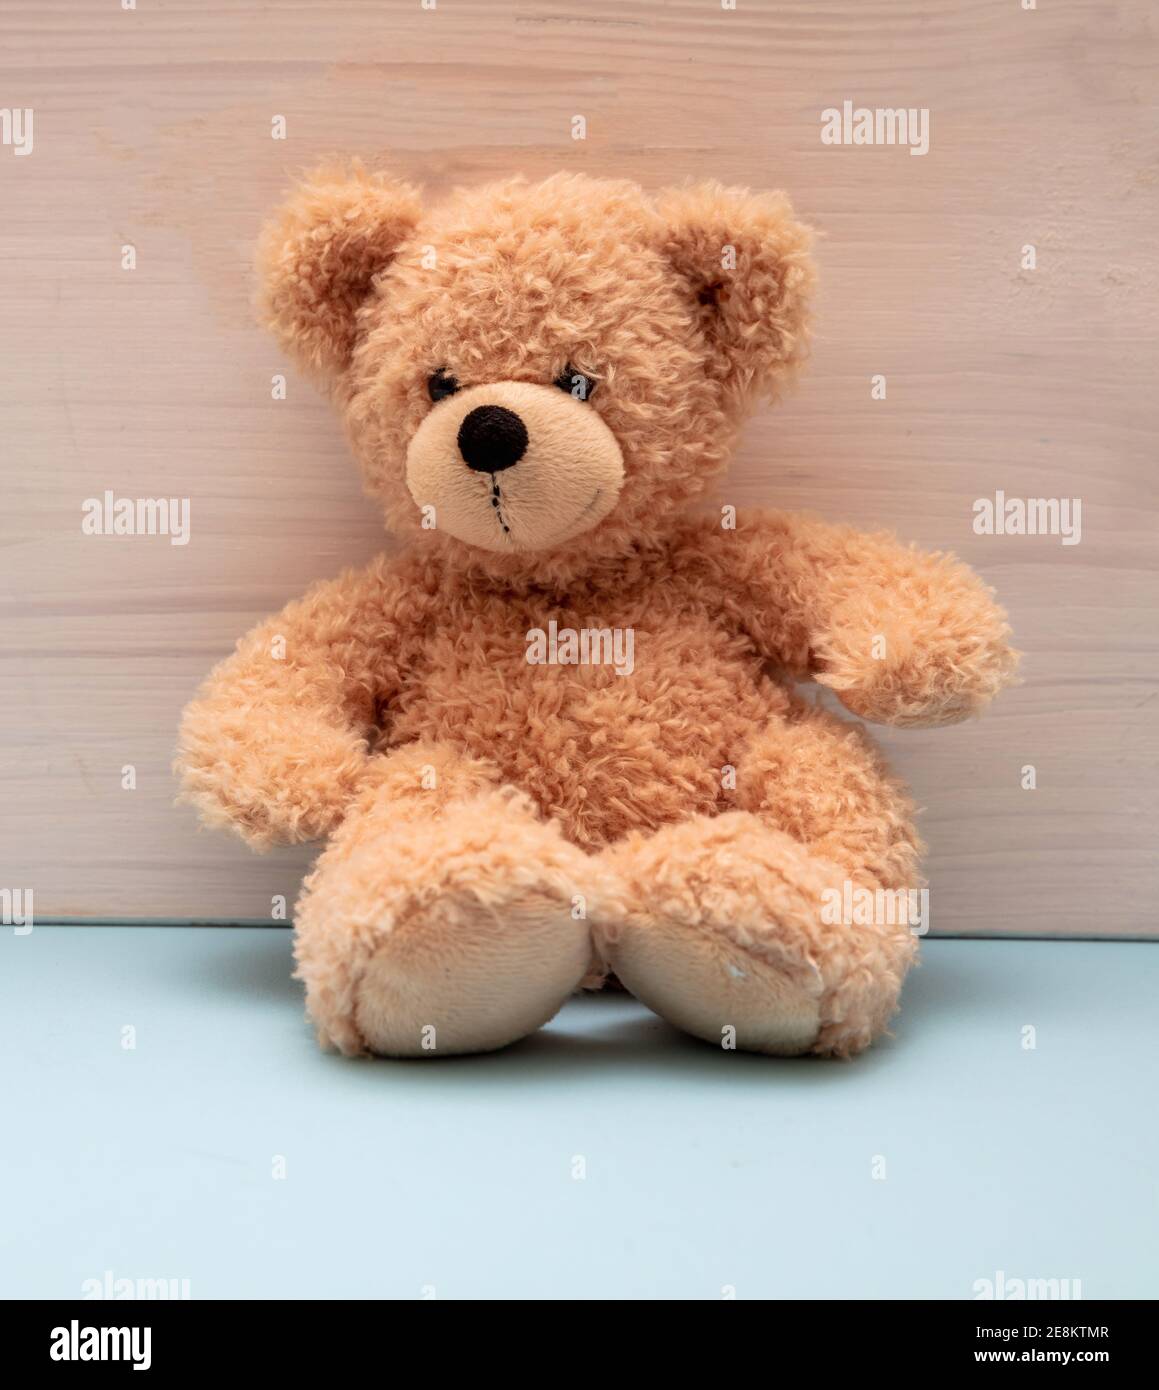 Teddybär sitzt auf pastellblauem Boden, Holzwand Hintergrund, Kinderzimmer Interieur, Kind allein Konzept Stockfoto